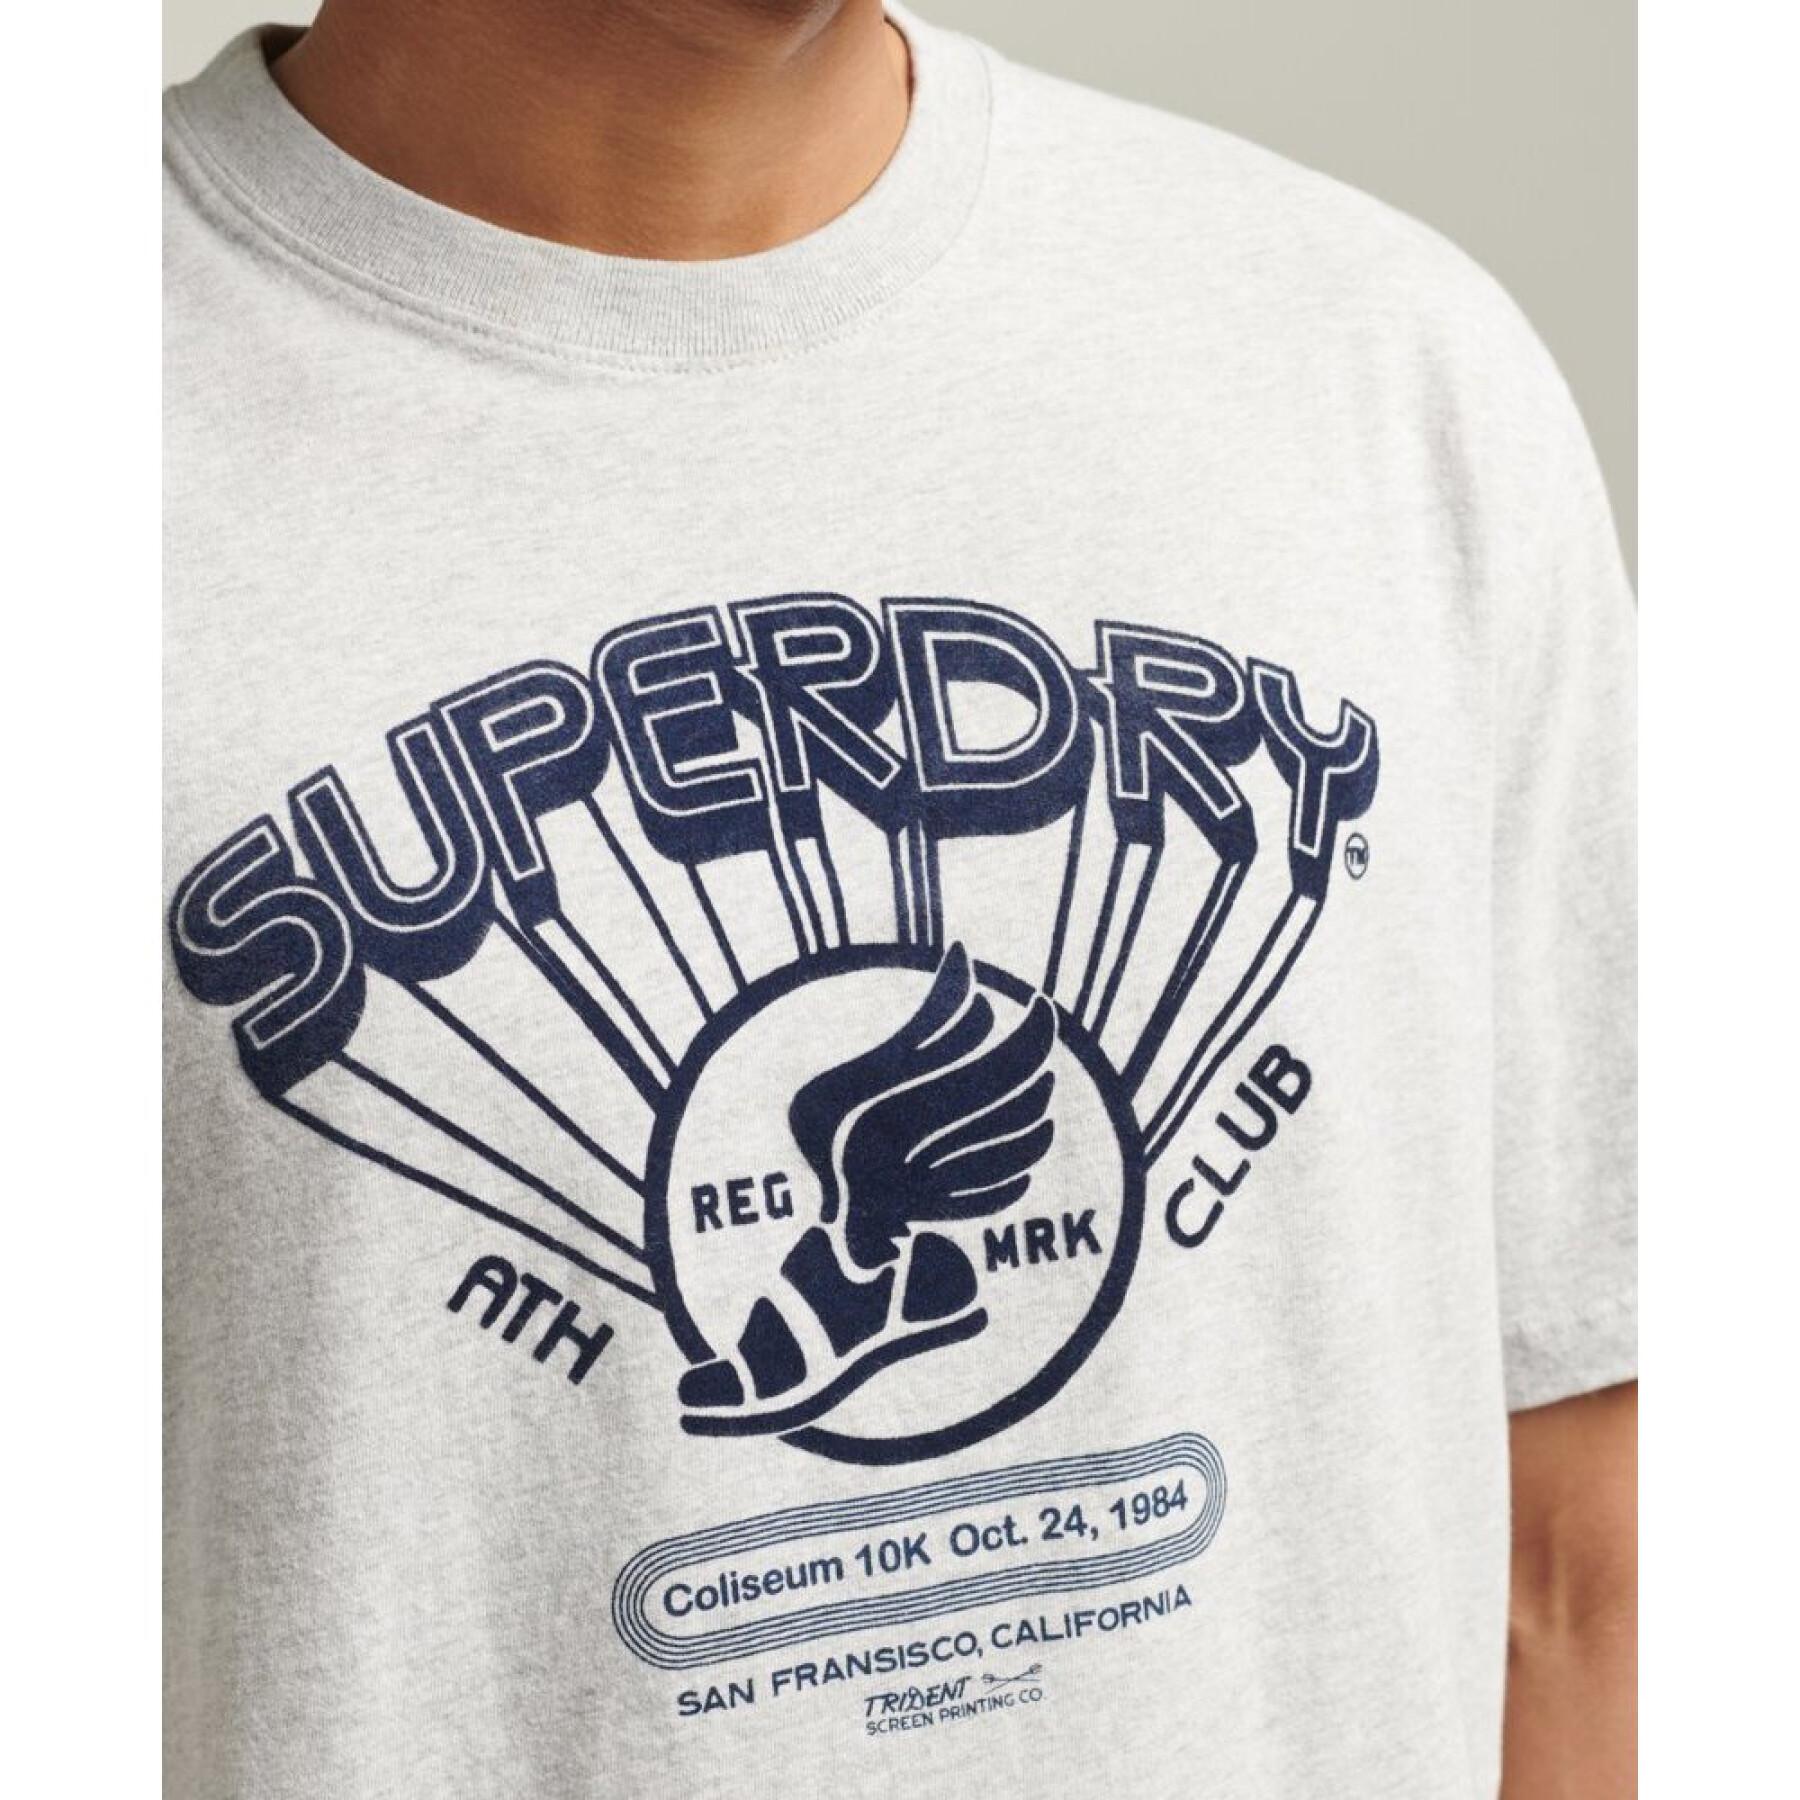 aus & - T-Shirt Bio-Baumwolle Club Kleidung Athletic T-Shirts Polohemden - Superdry Vintage Herren -